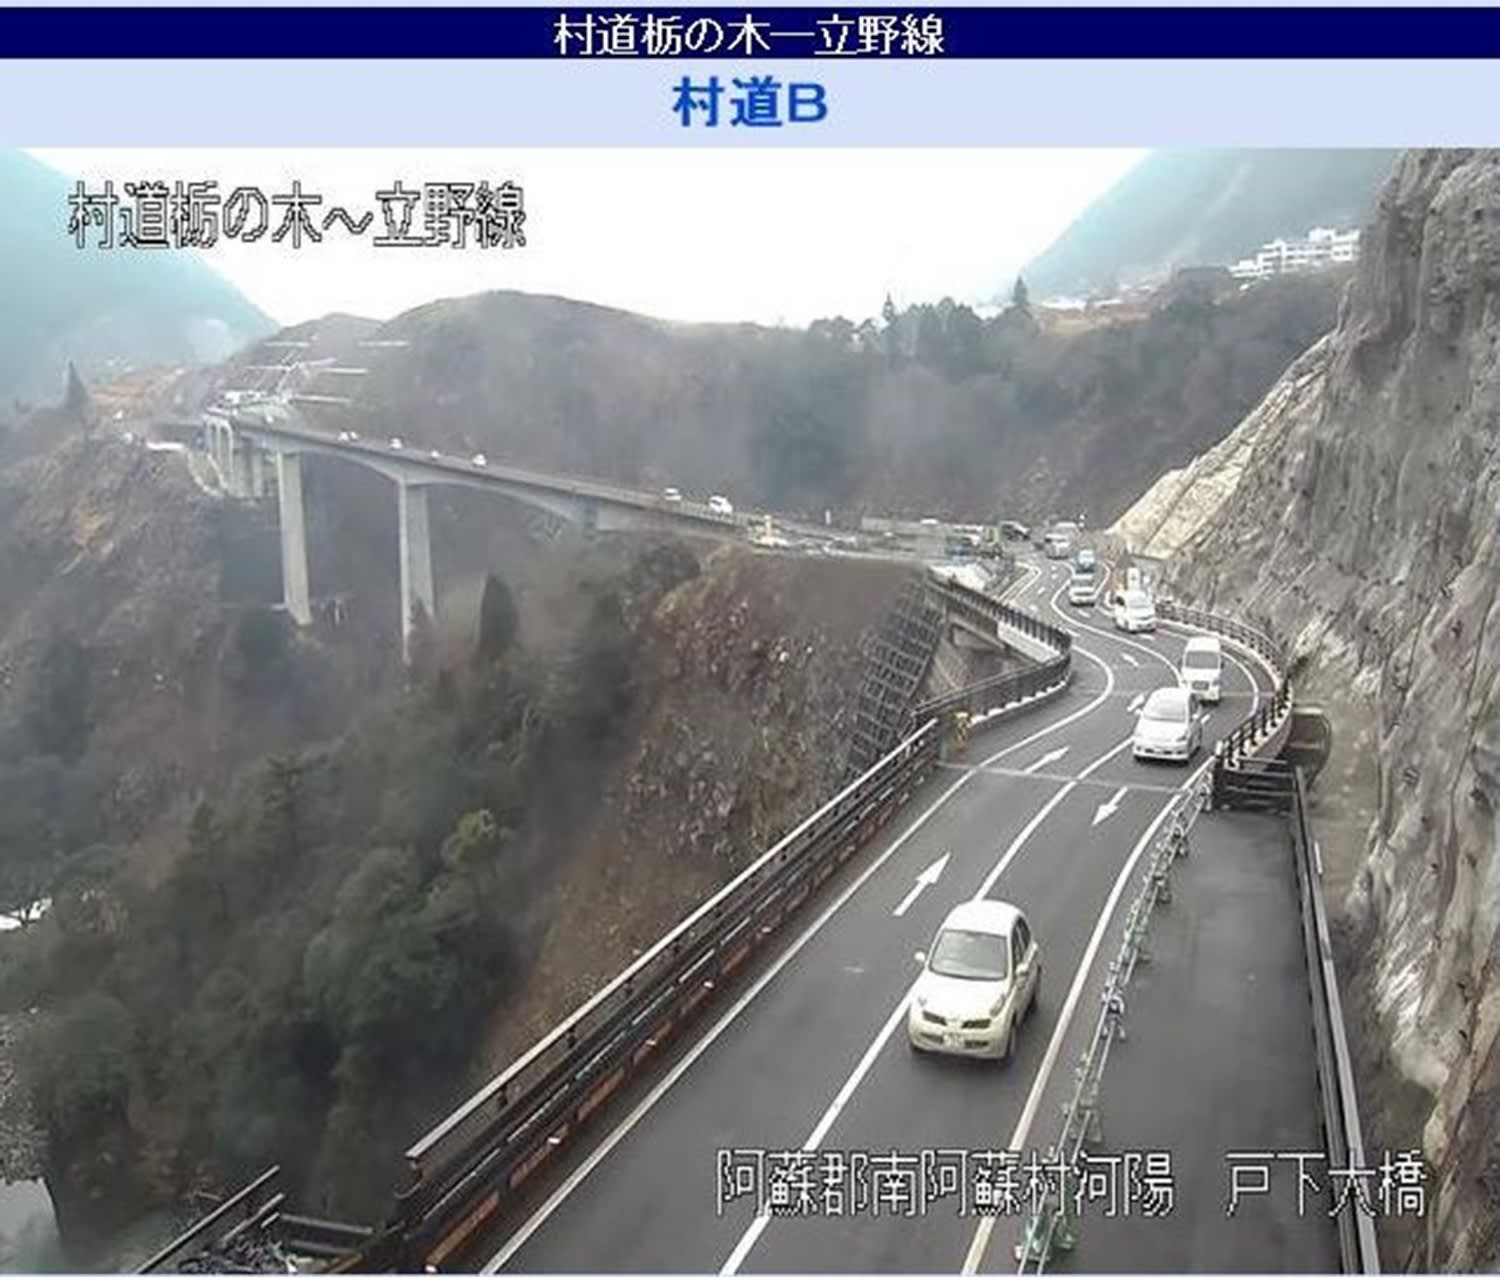 国土交通省熊本復興事務所が配信している長陽大橋ルートのリアルタイムの画像